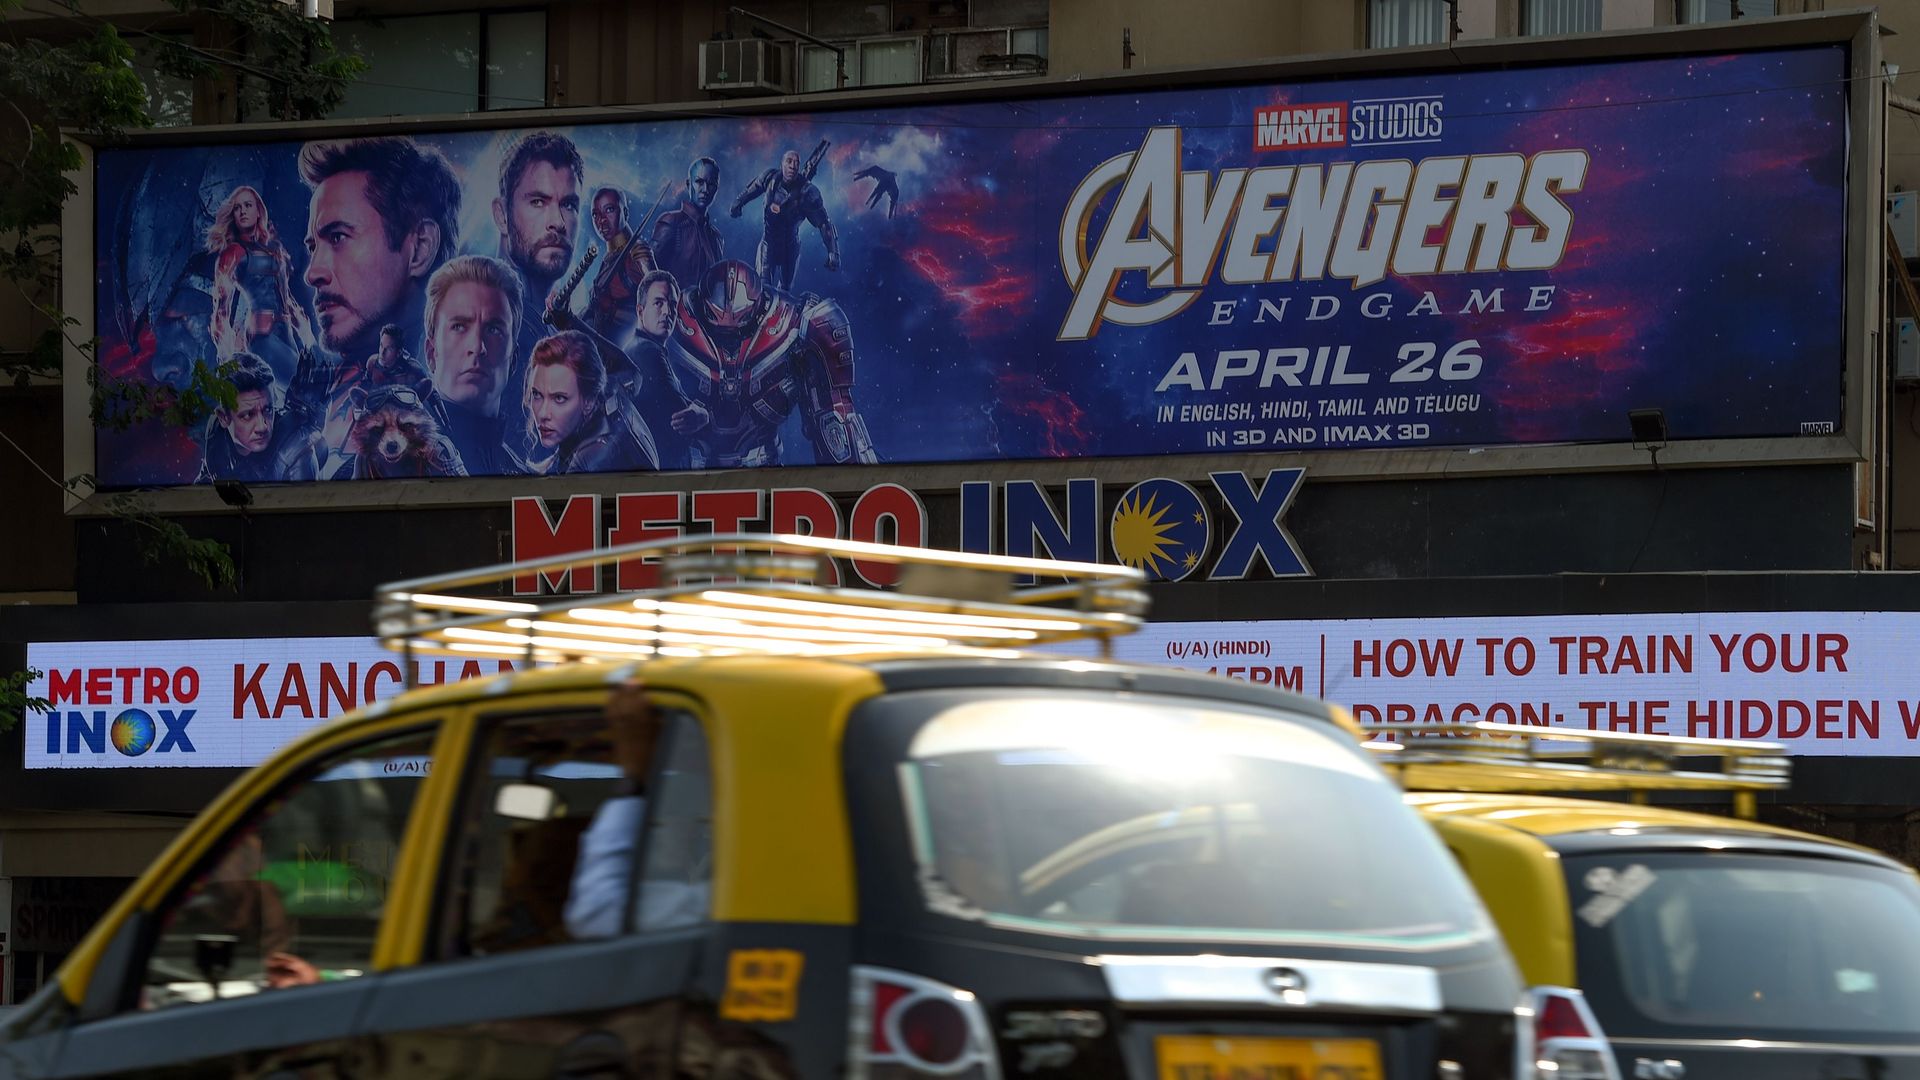 Avengers: Endgame from local IMAX website